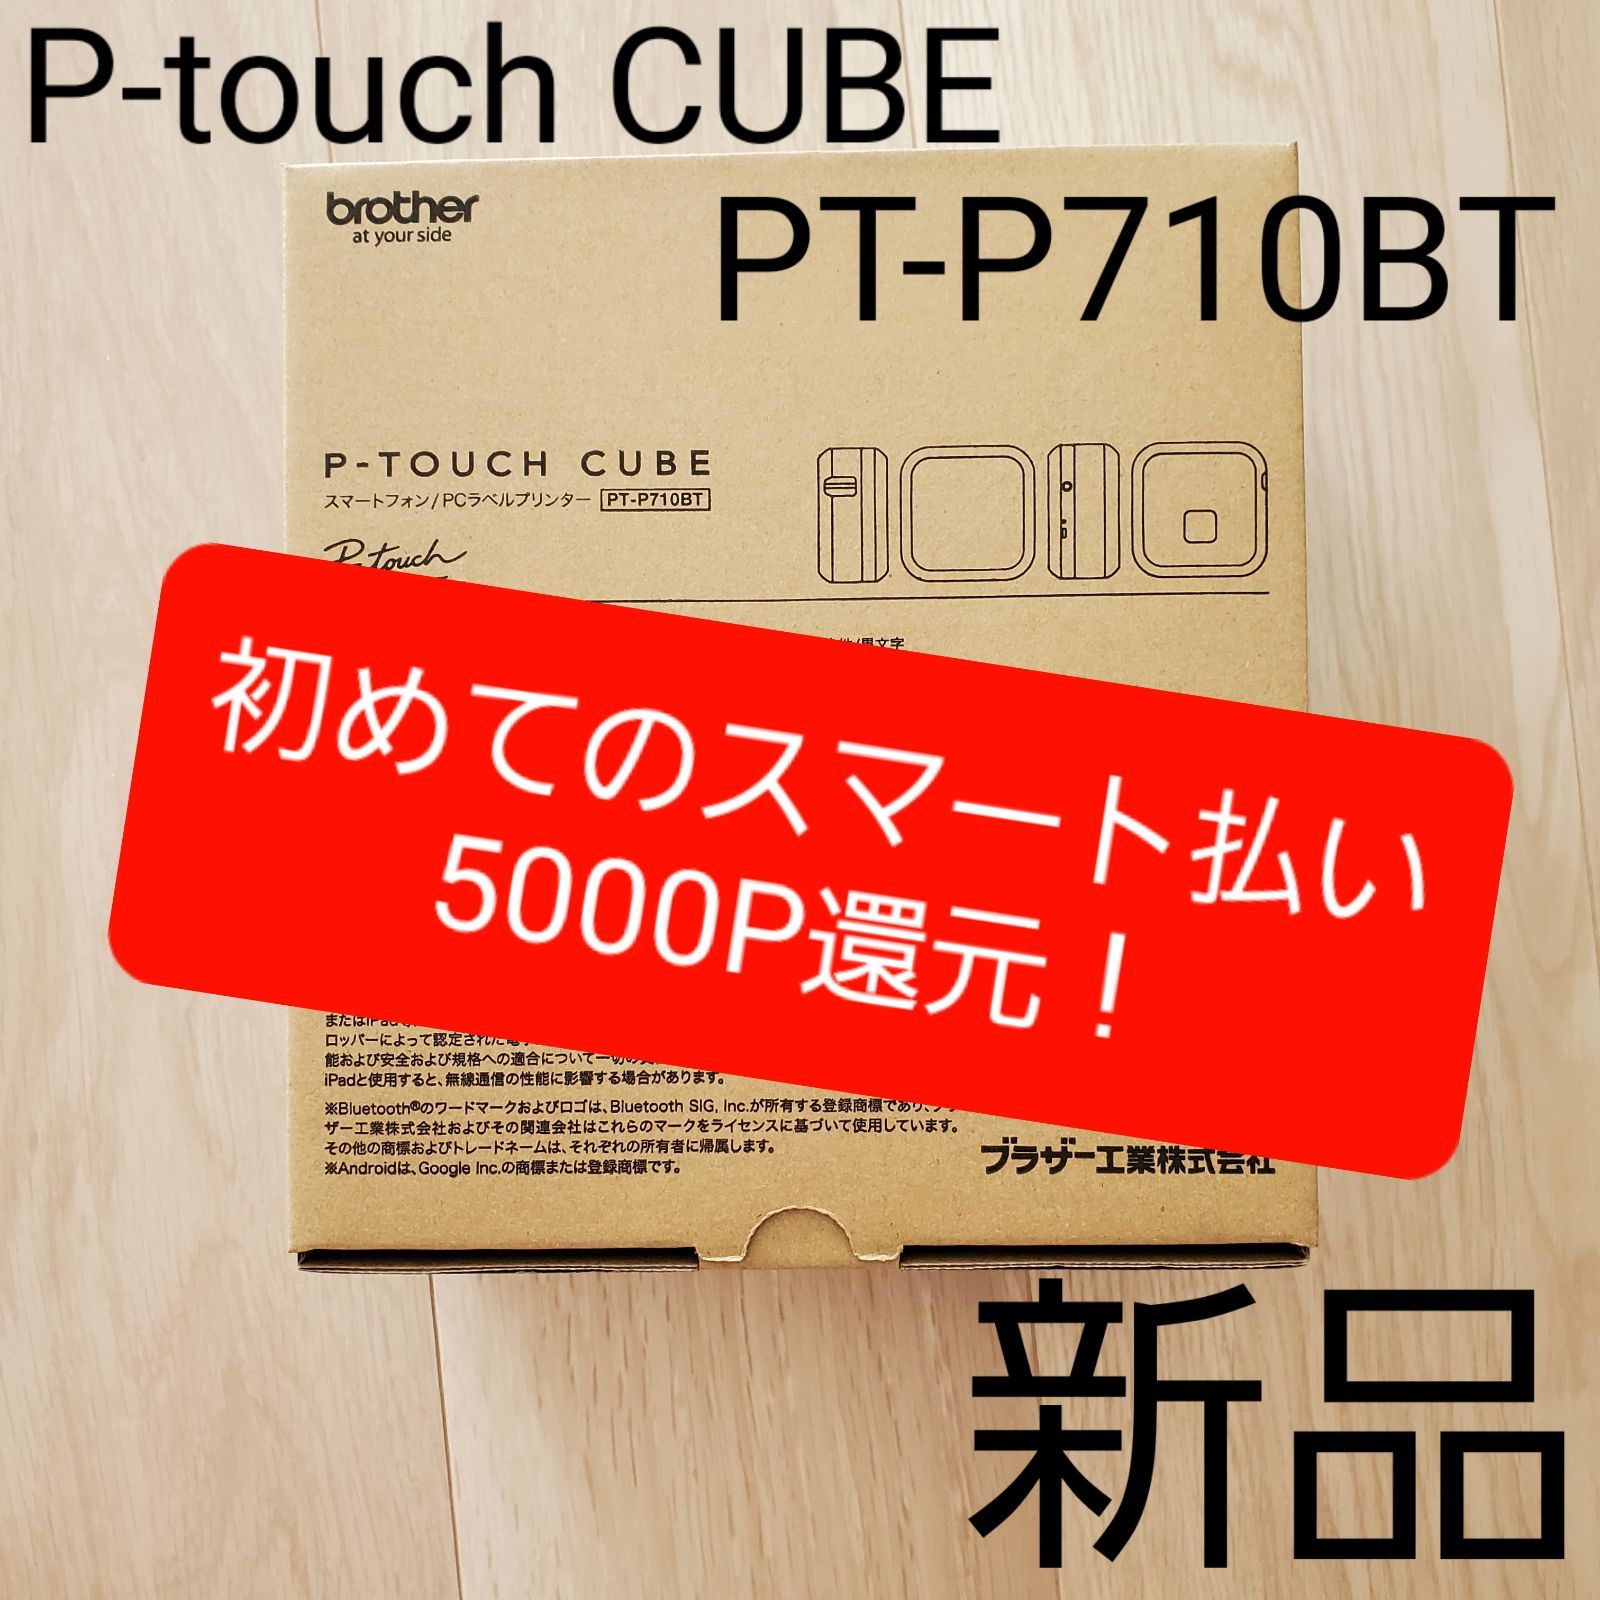 ブラザー工業 PCラベルプリンター P-touch PT-P950NW PT-P950NW